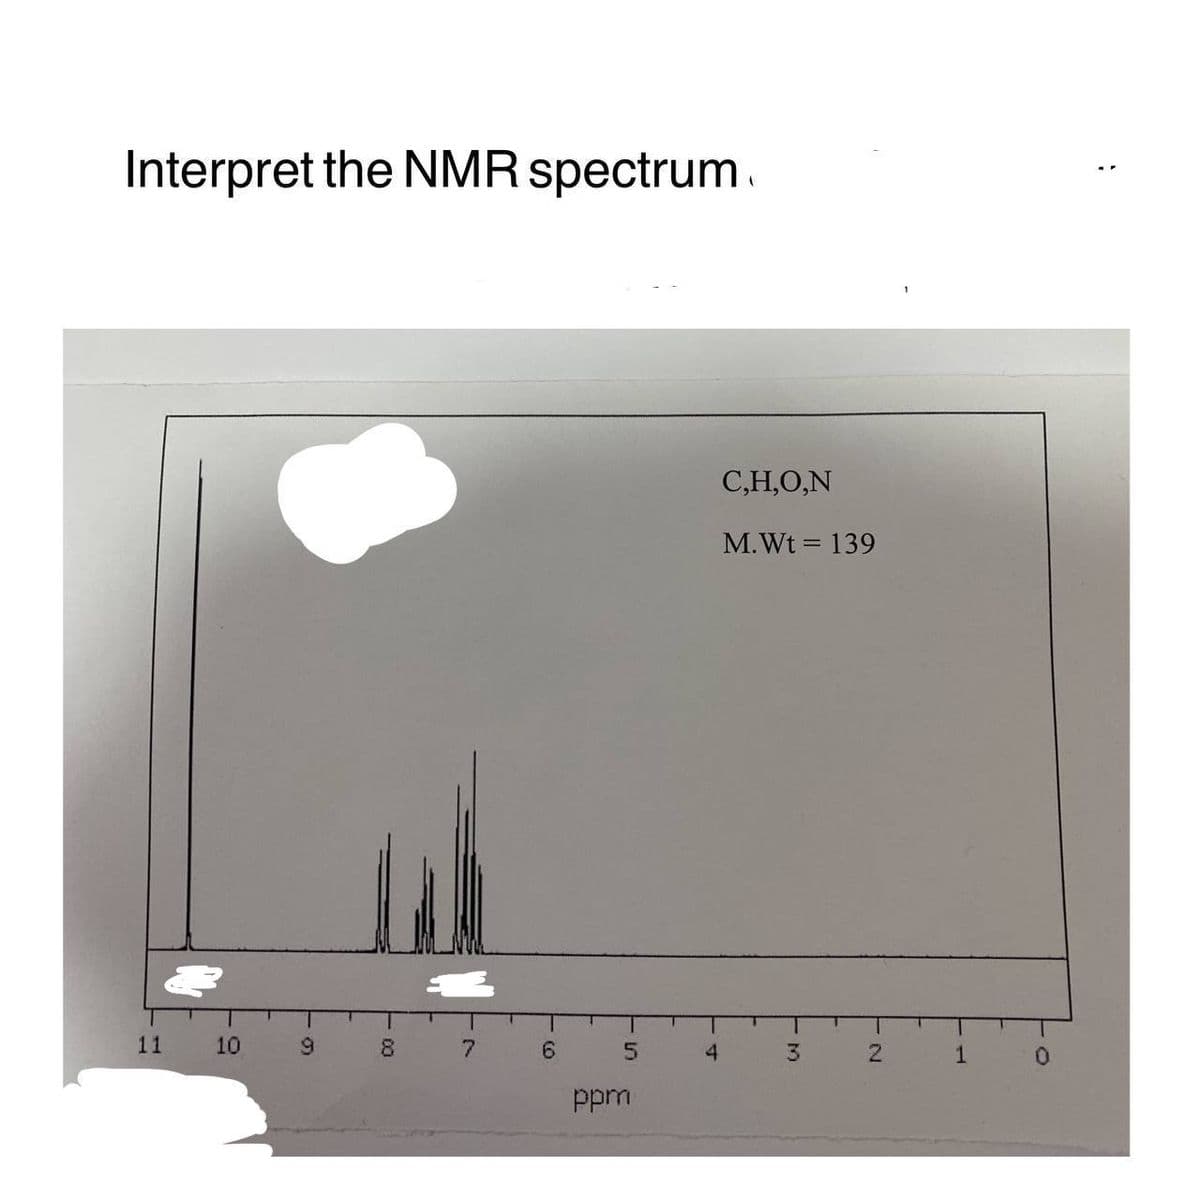 Interpret the NMR spectrum
11
10
9
00
7
6
5
ppm
4
C,H,O,N
M. Wt = 139
3
N
1
0